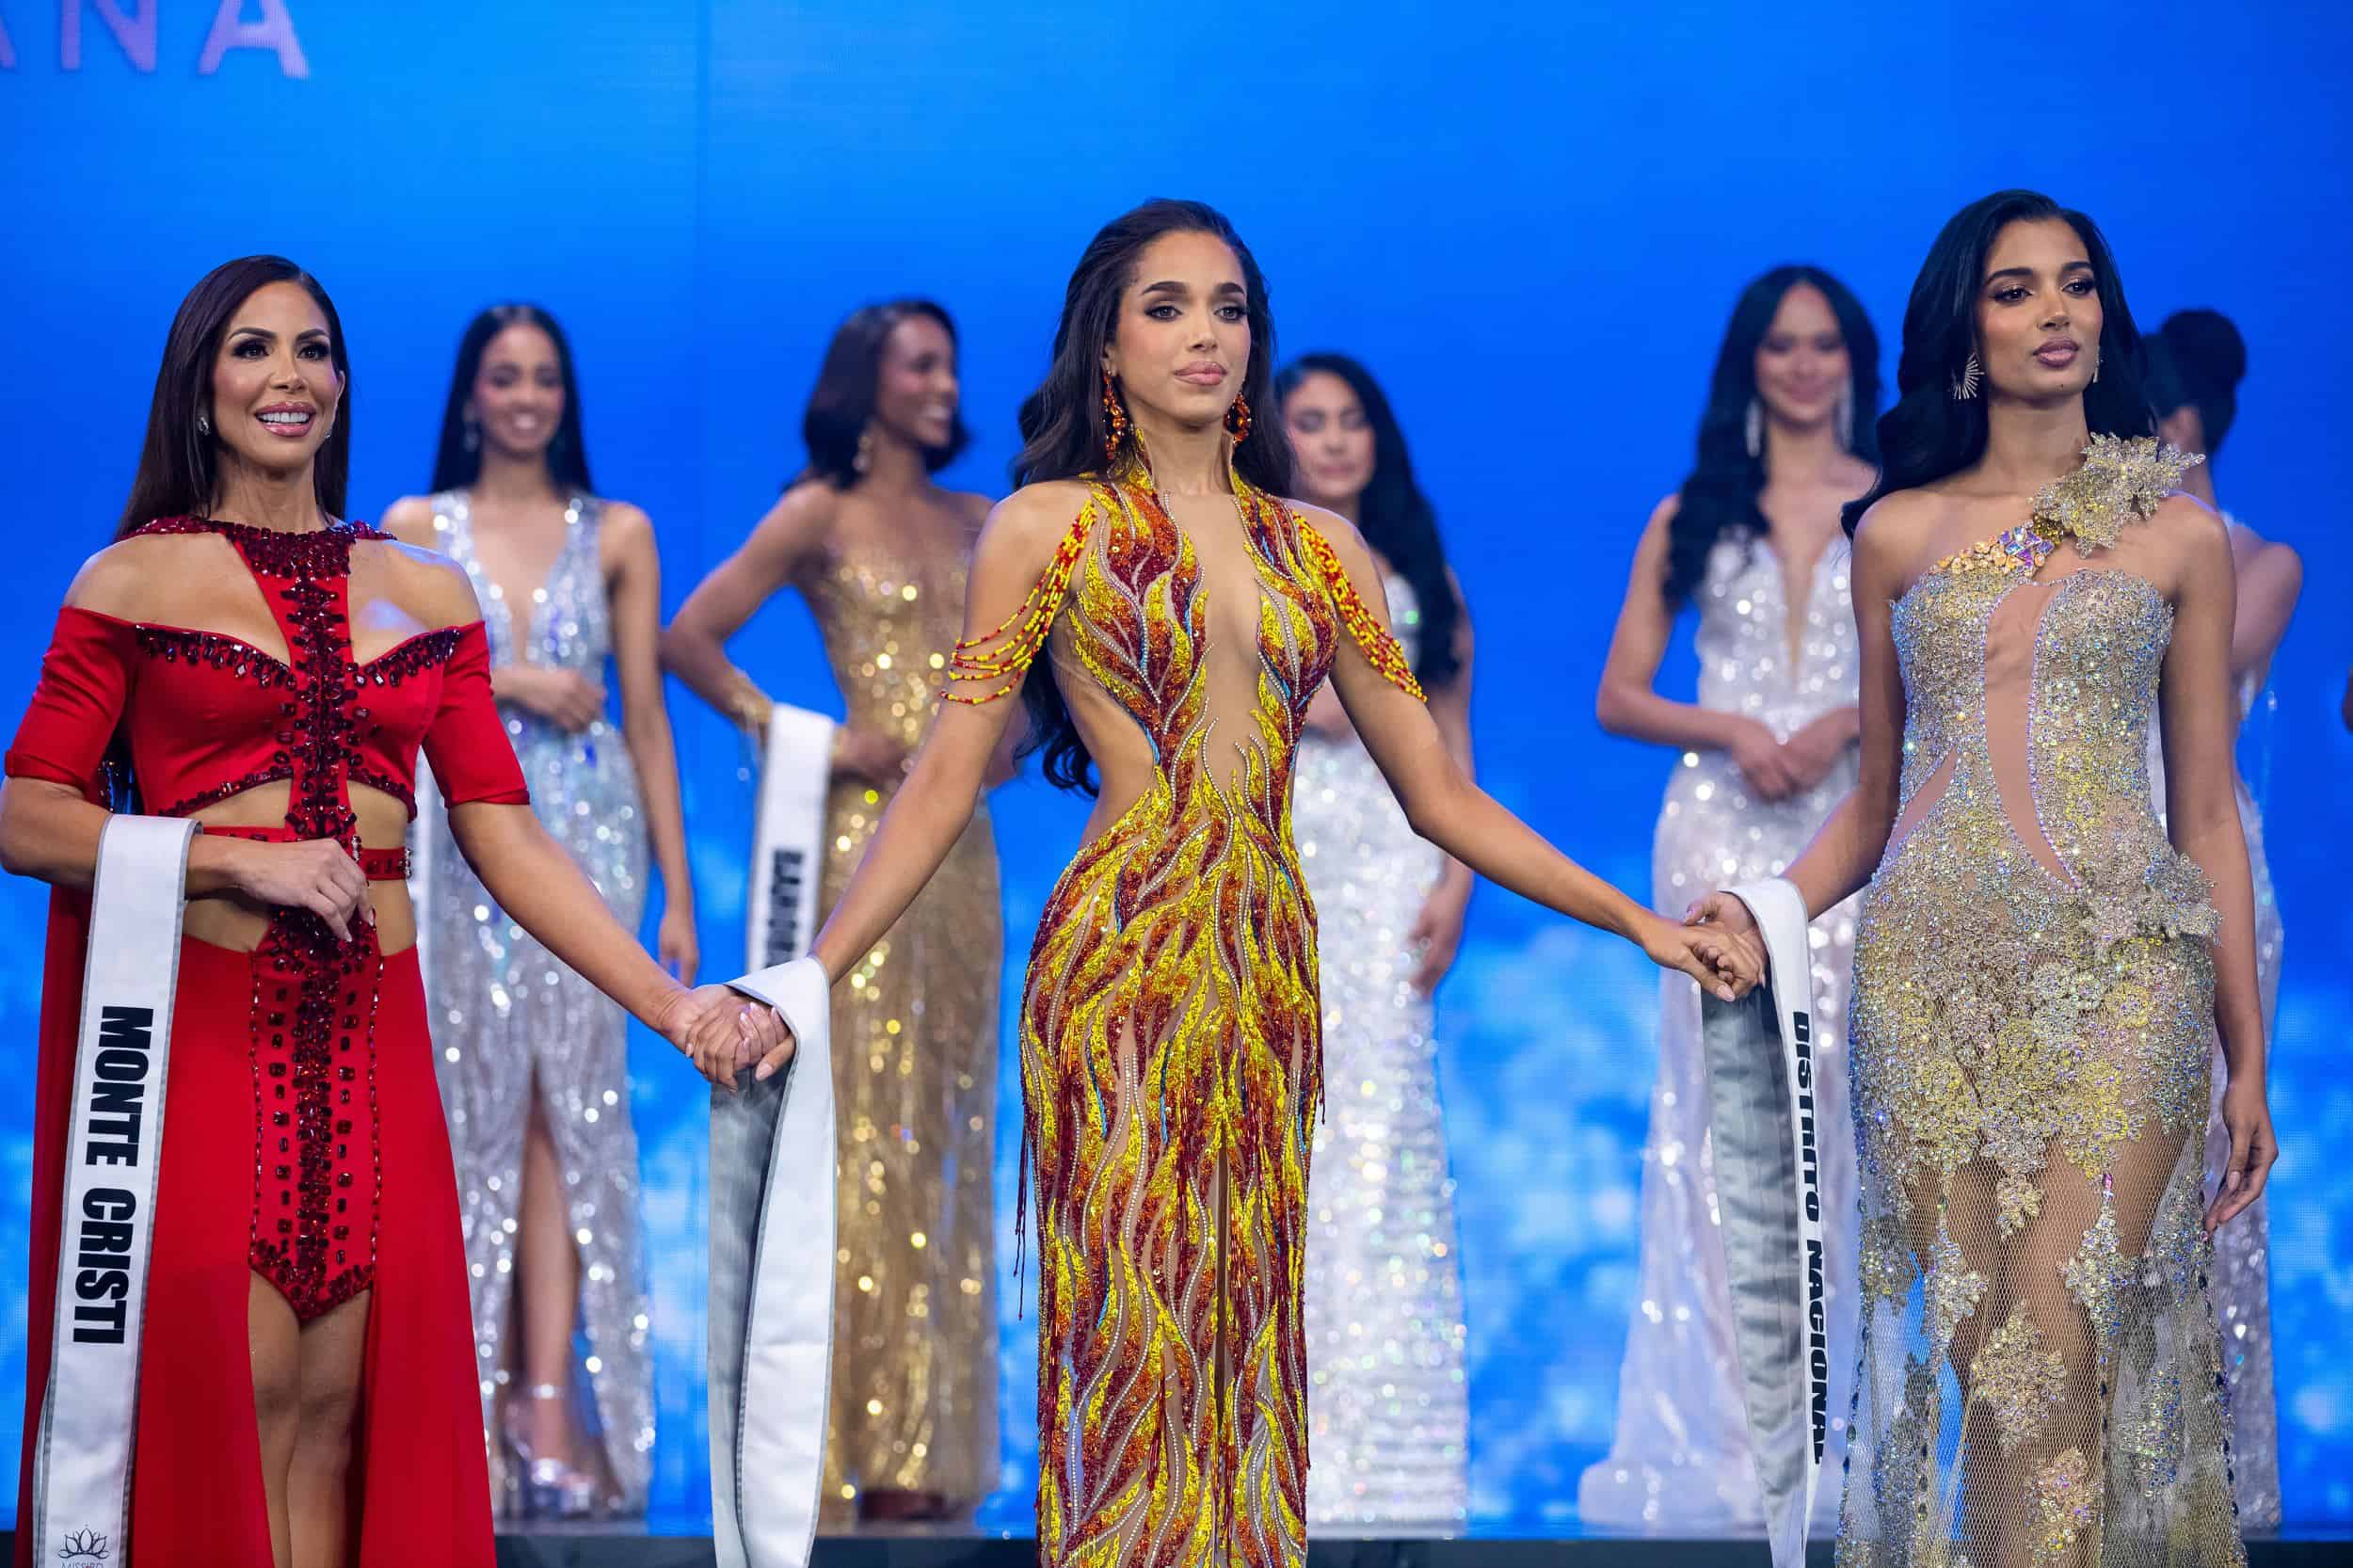 Haidy Cruz, Melissa Núñez y Celinee Santos conformaron el trío de finalistas en el certamen de belleza.